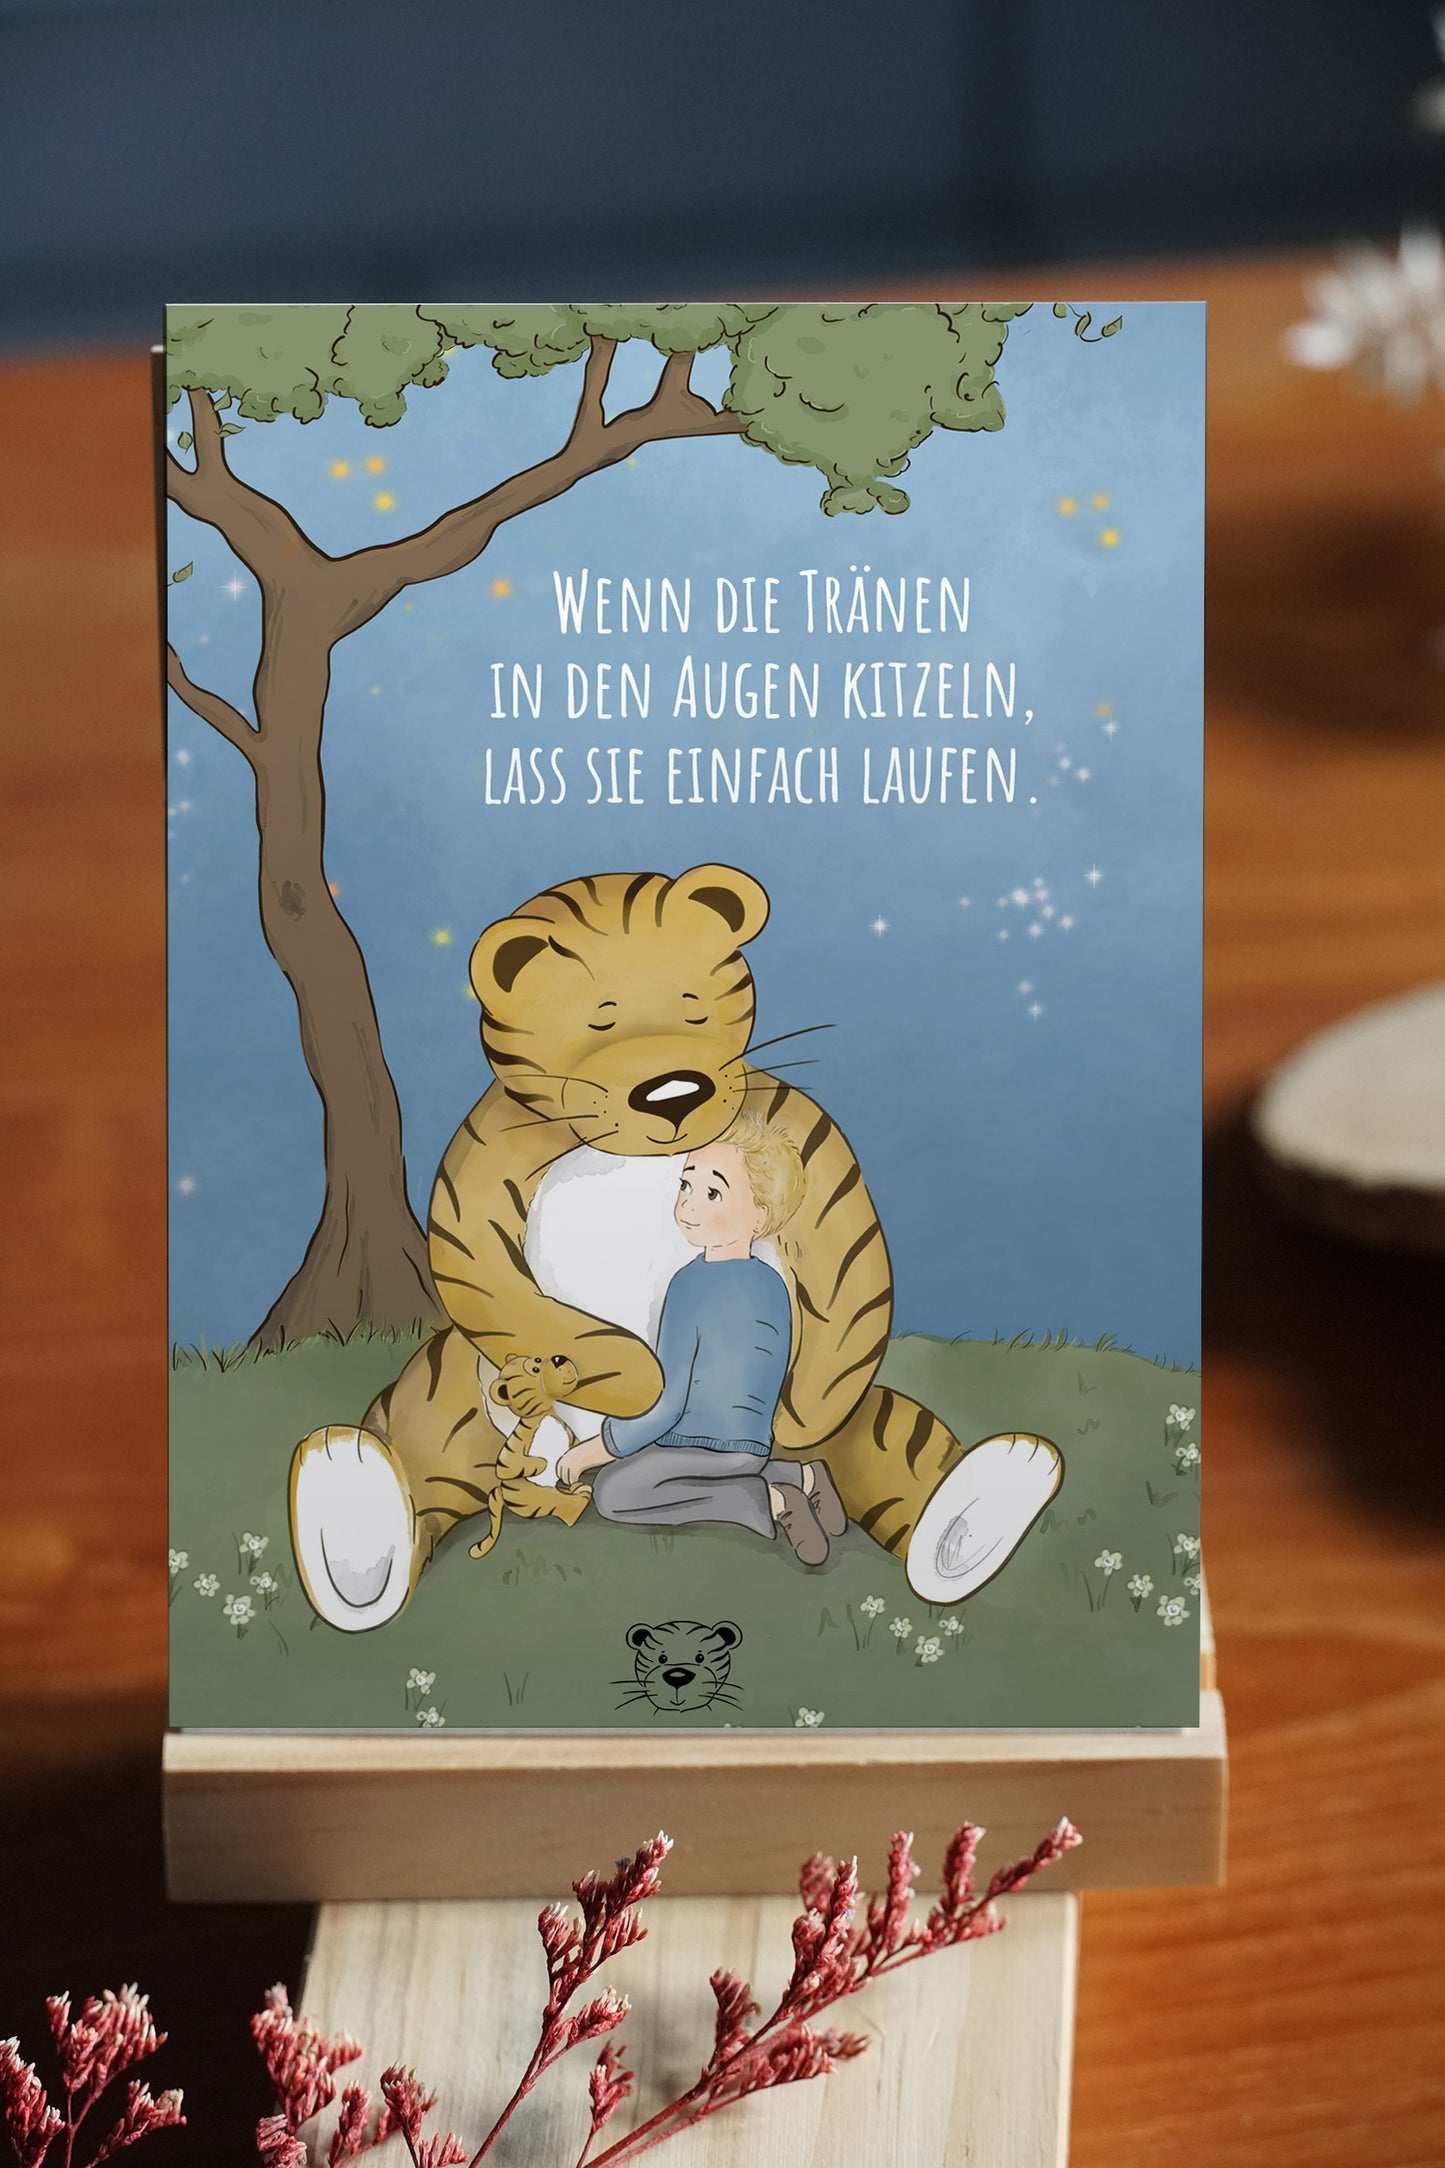 Das Trost-Tiger Kinderbuch plus Poster und Postkarten: Eine Reise durch das Trauerland